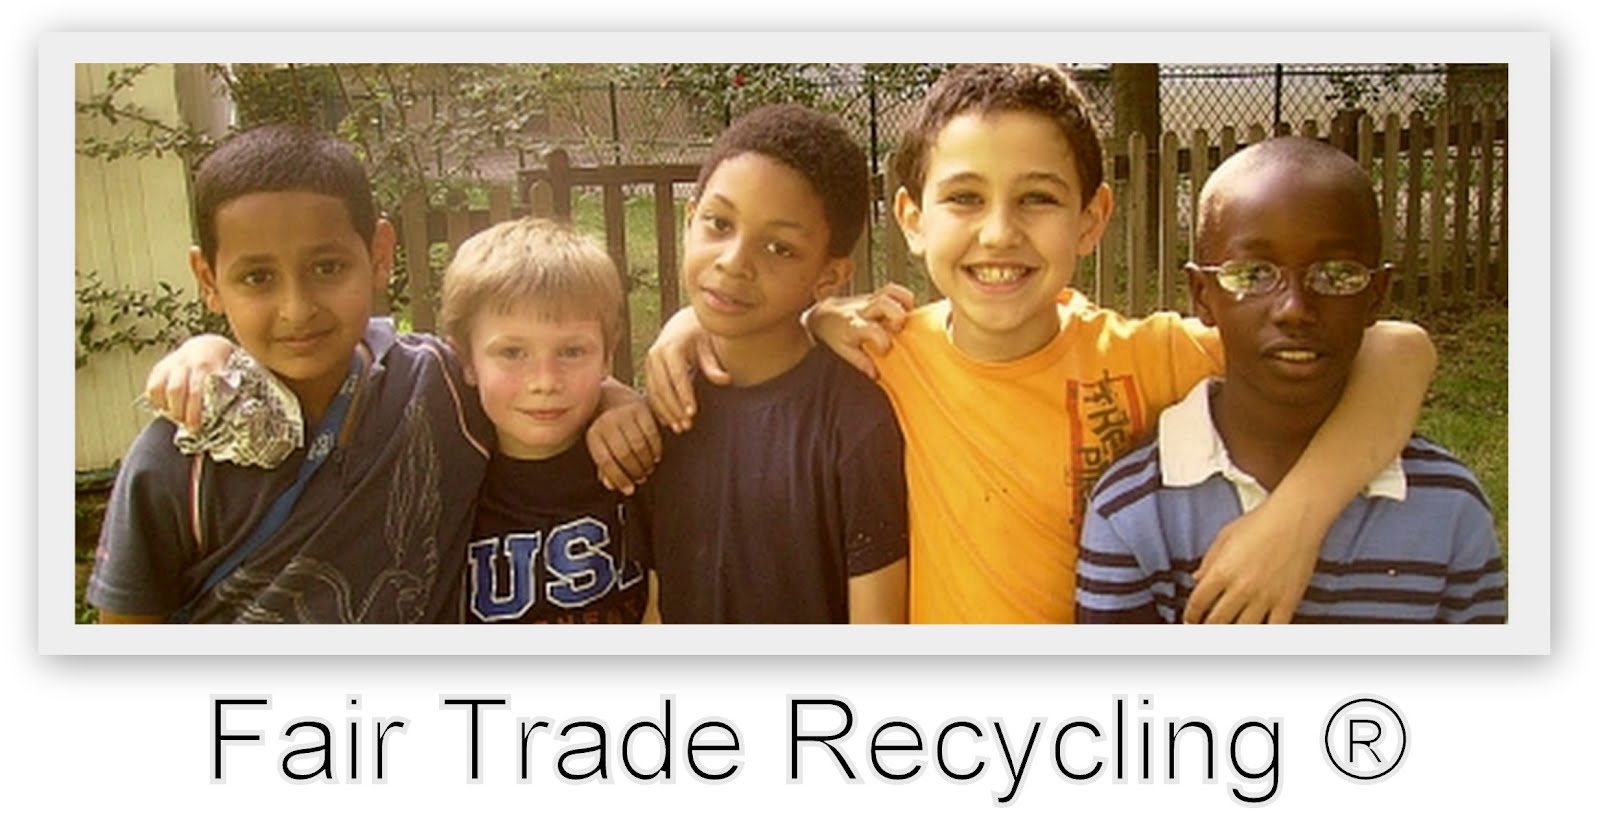 Fair Trade Recycling